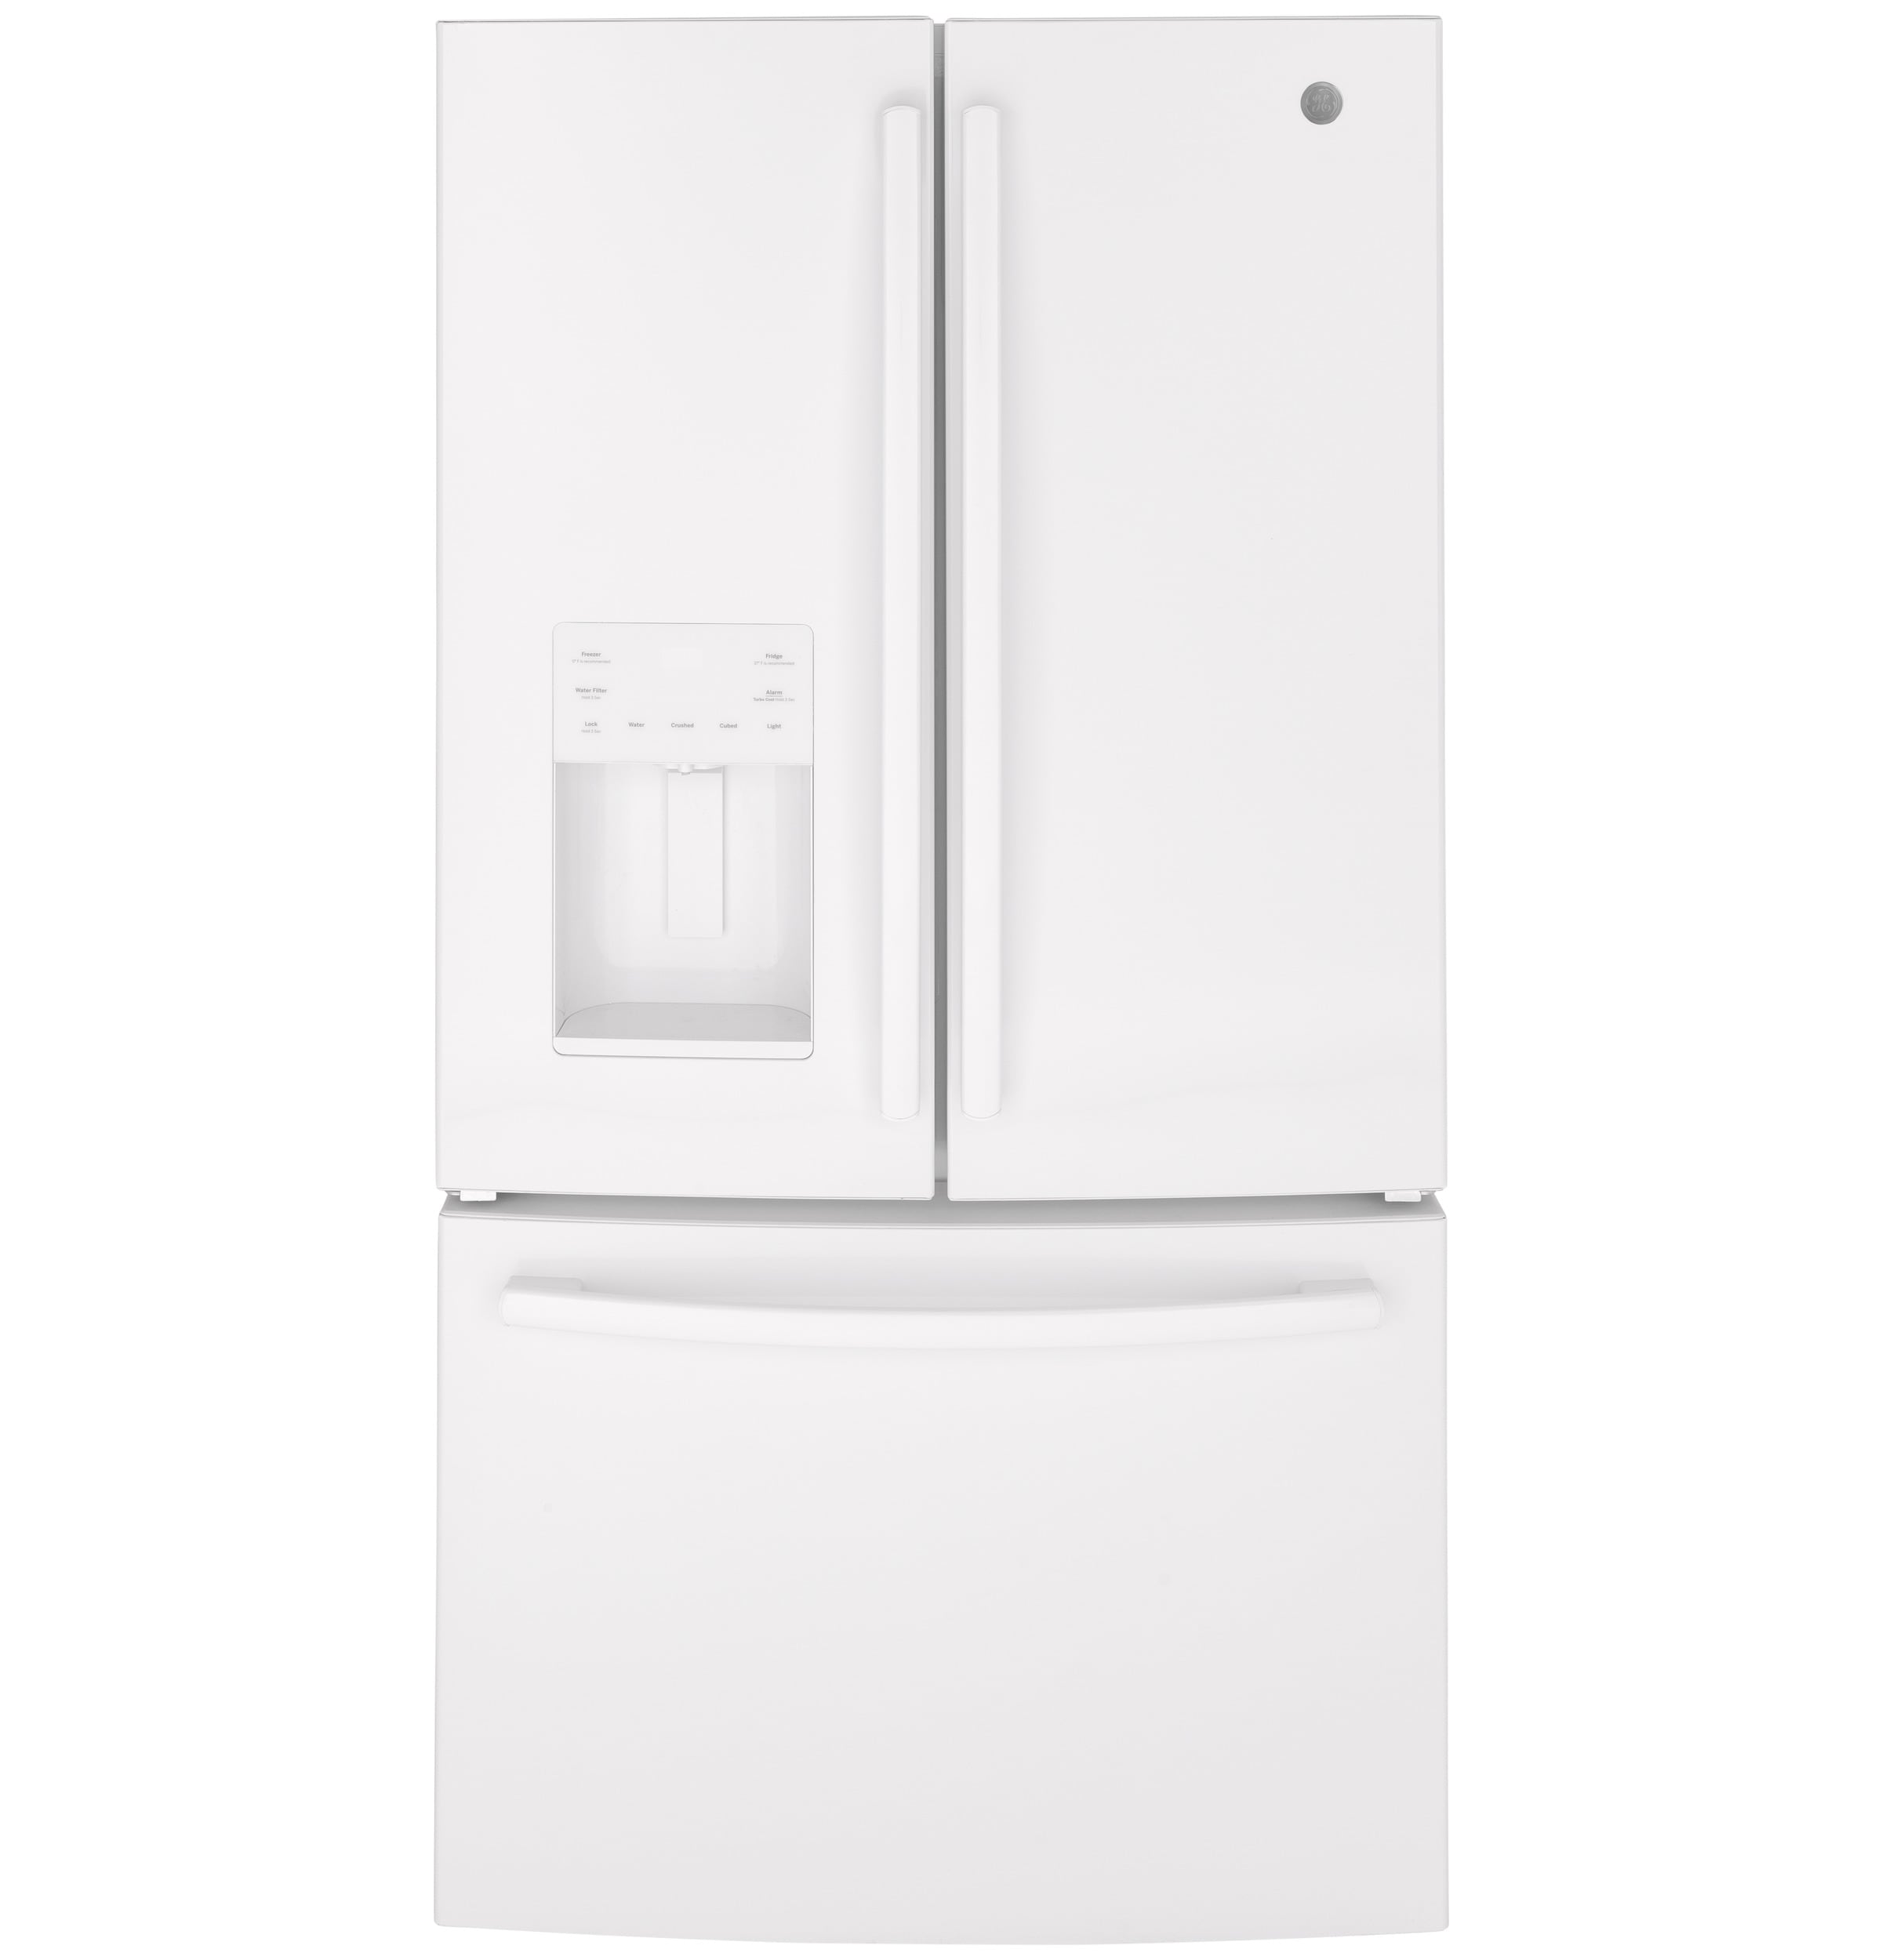 Ge 25 6 Cu Ft French Door Refrigerator